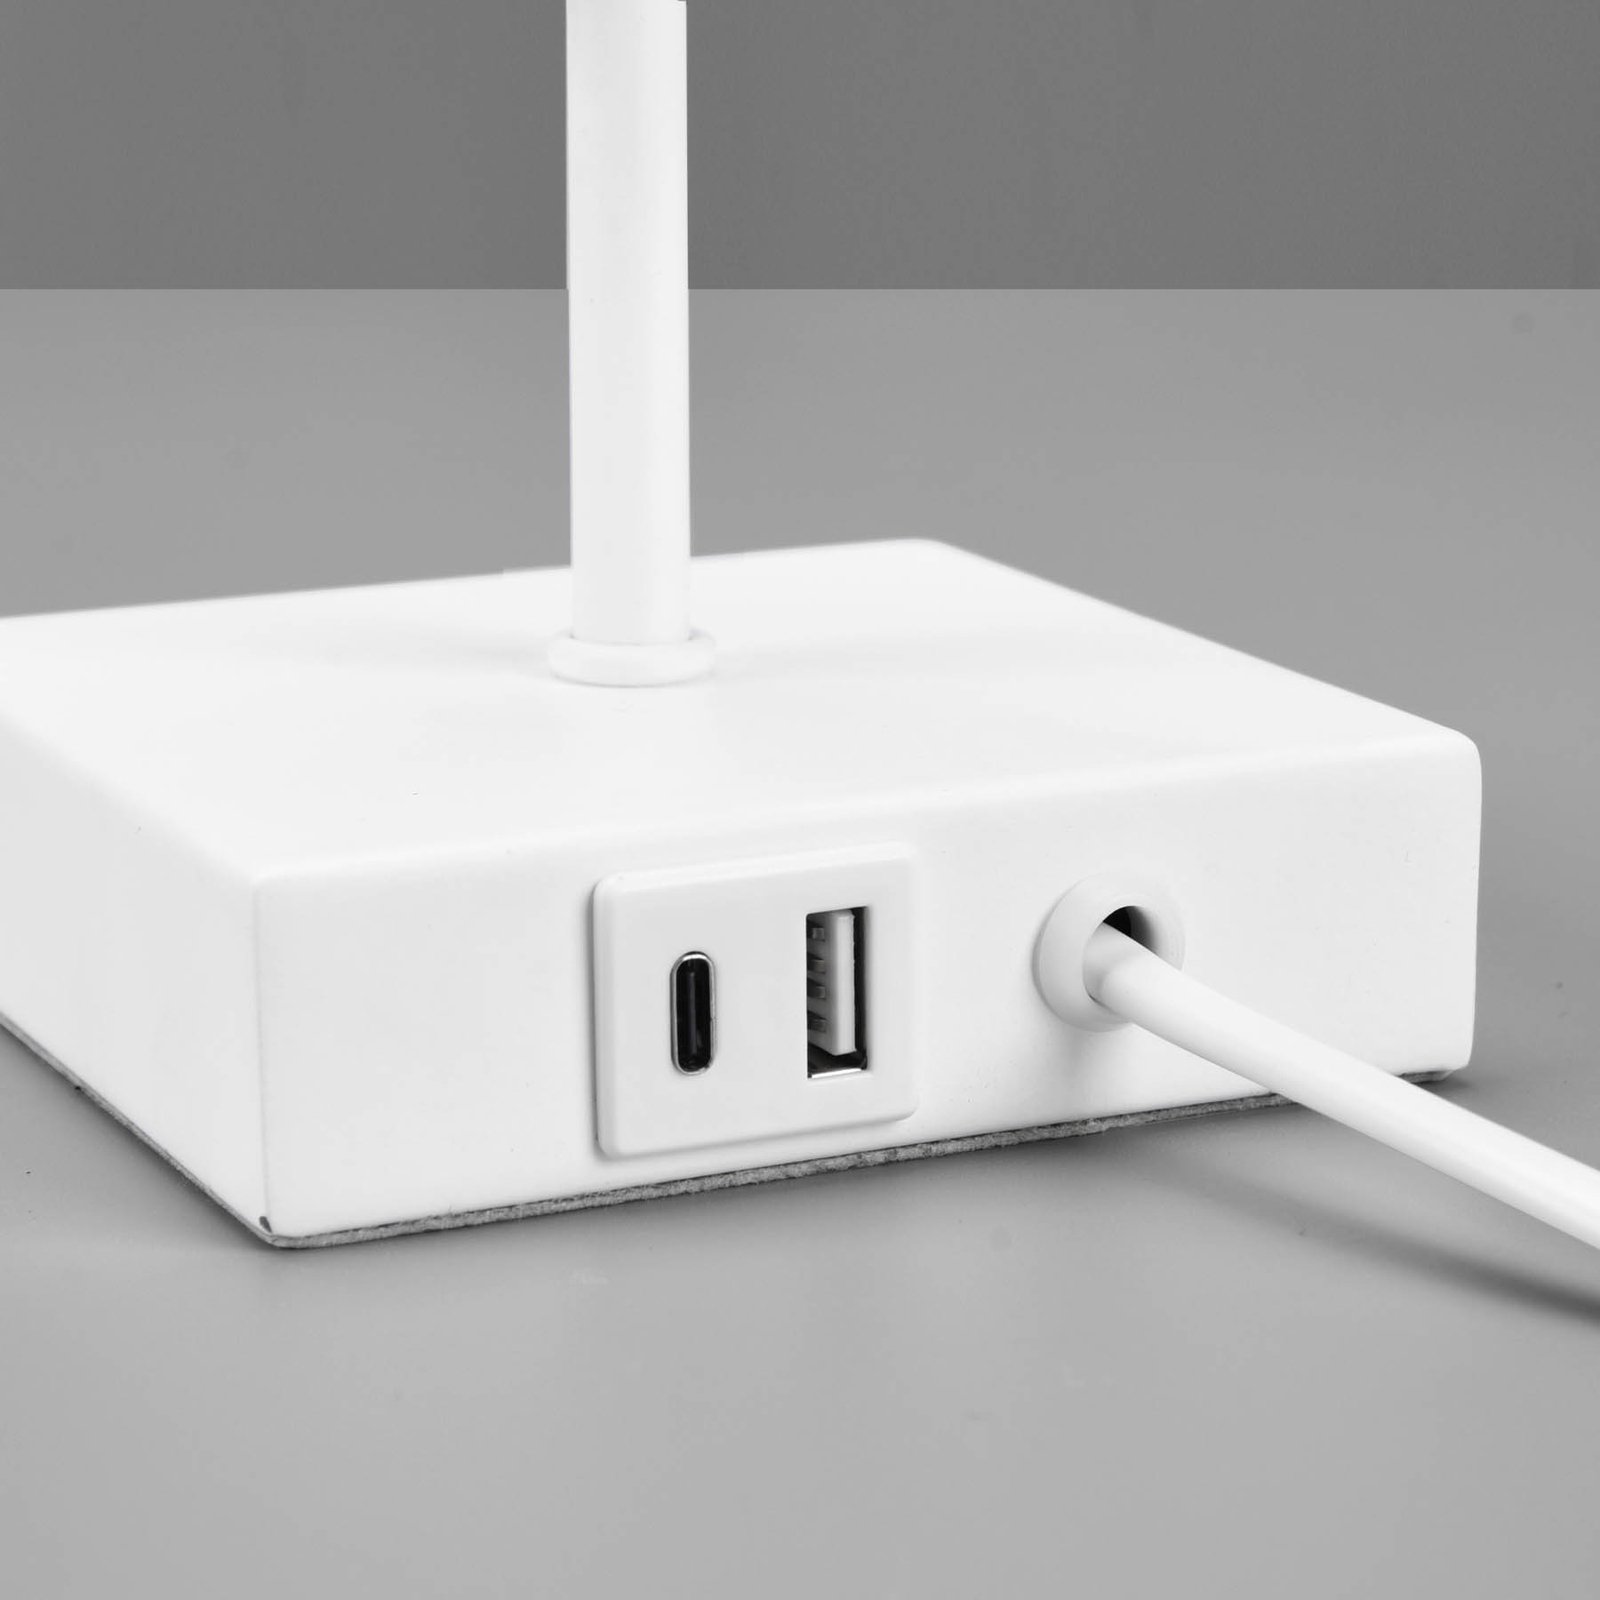 Tischleuchte Ole mit USB-Anschluss, weiß/weiß